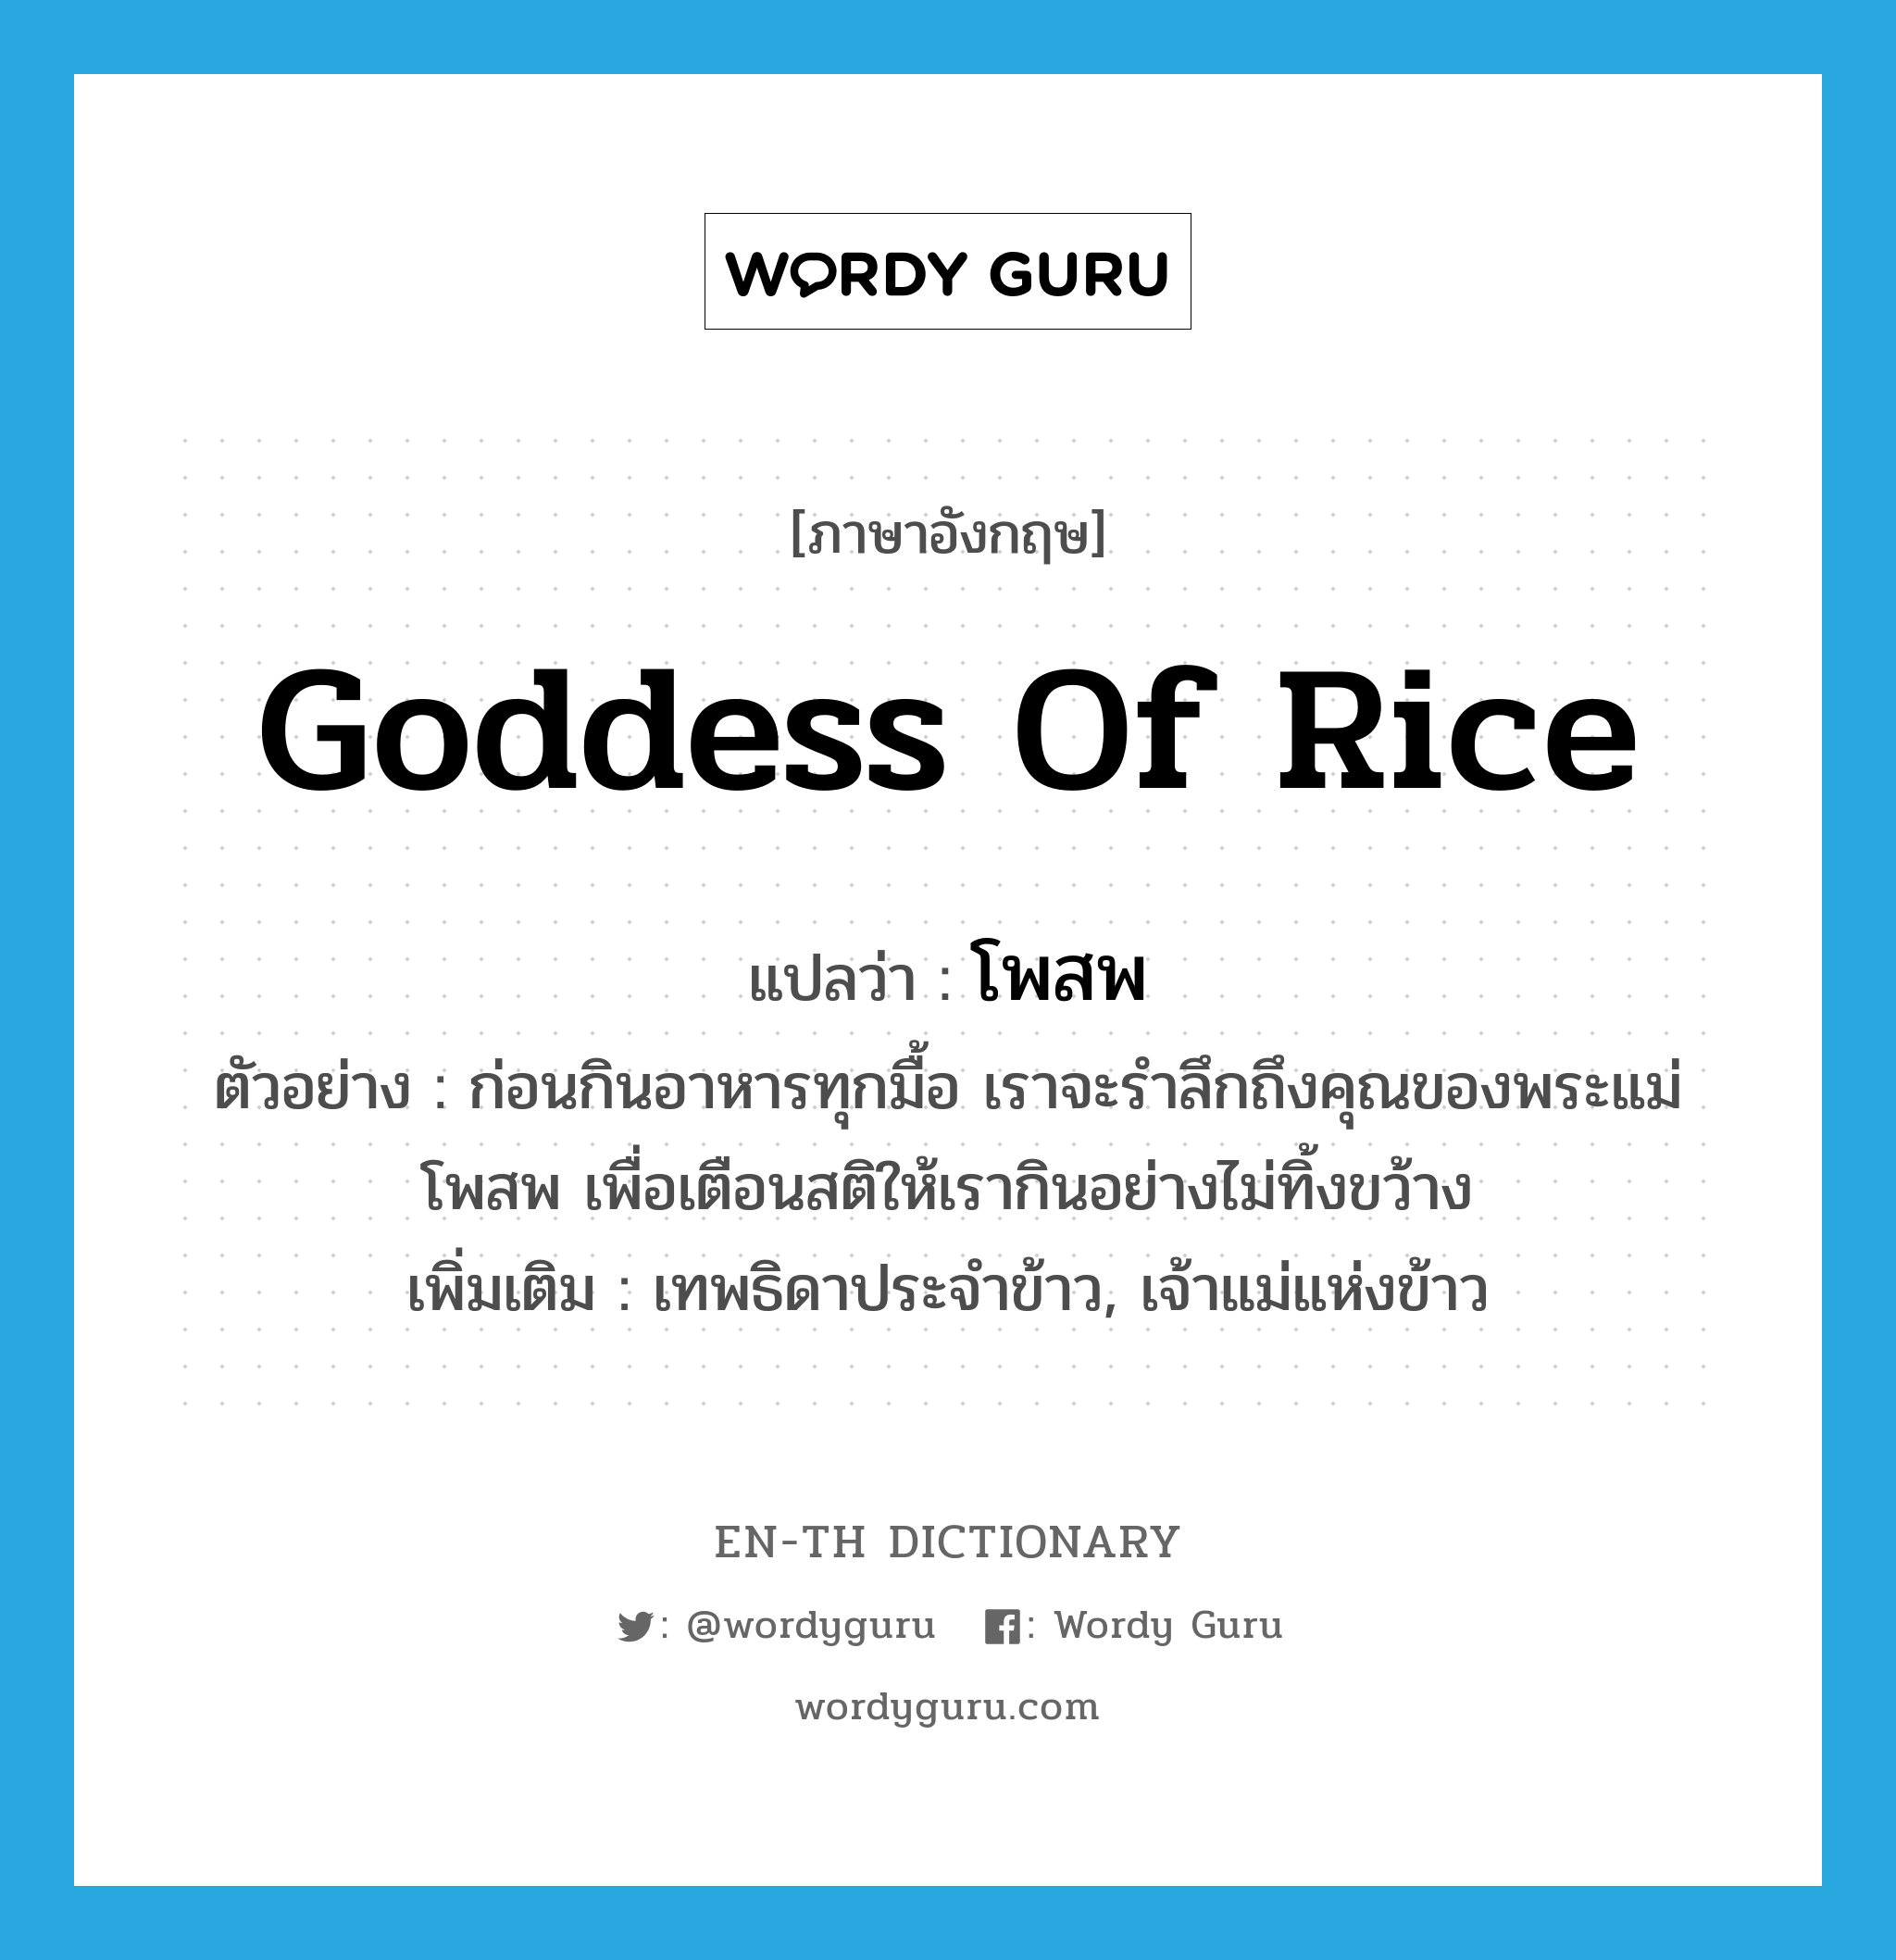 โพสพ ภาษาอังกฤษ?, คำศัพท์ภาษาอังกฤษ โพสพ แปลว่า goddess of rice ประเภท N ตัวอย่าง ก่อนกินอาหารทุกมื้อ เราจะรำลึกถึงคุณของพระแม่โพสพ เพื่อเตือนสติให้เรากินอย่างไม่ทิ้งขว้าง เพิ่มเติม เทพธิดาประจำข้าว, เจ้าแม่แห่งข้าว หมวด N